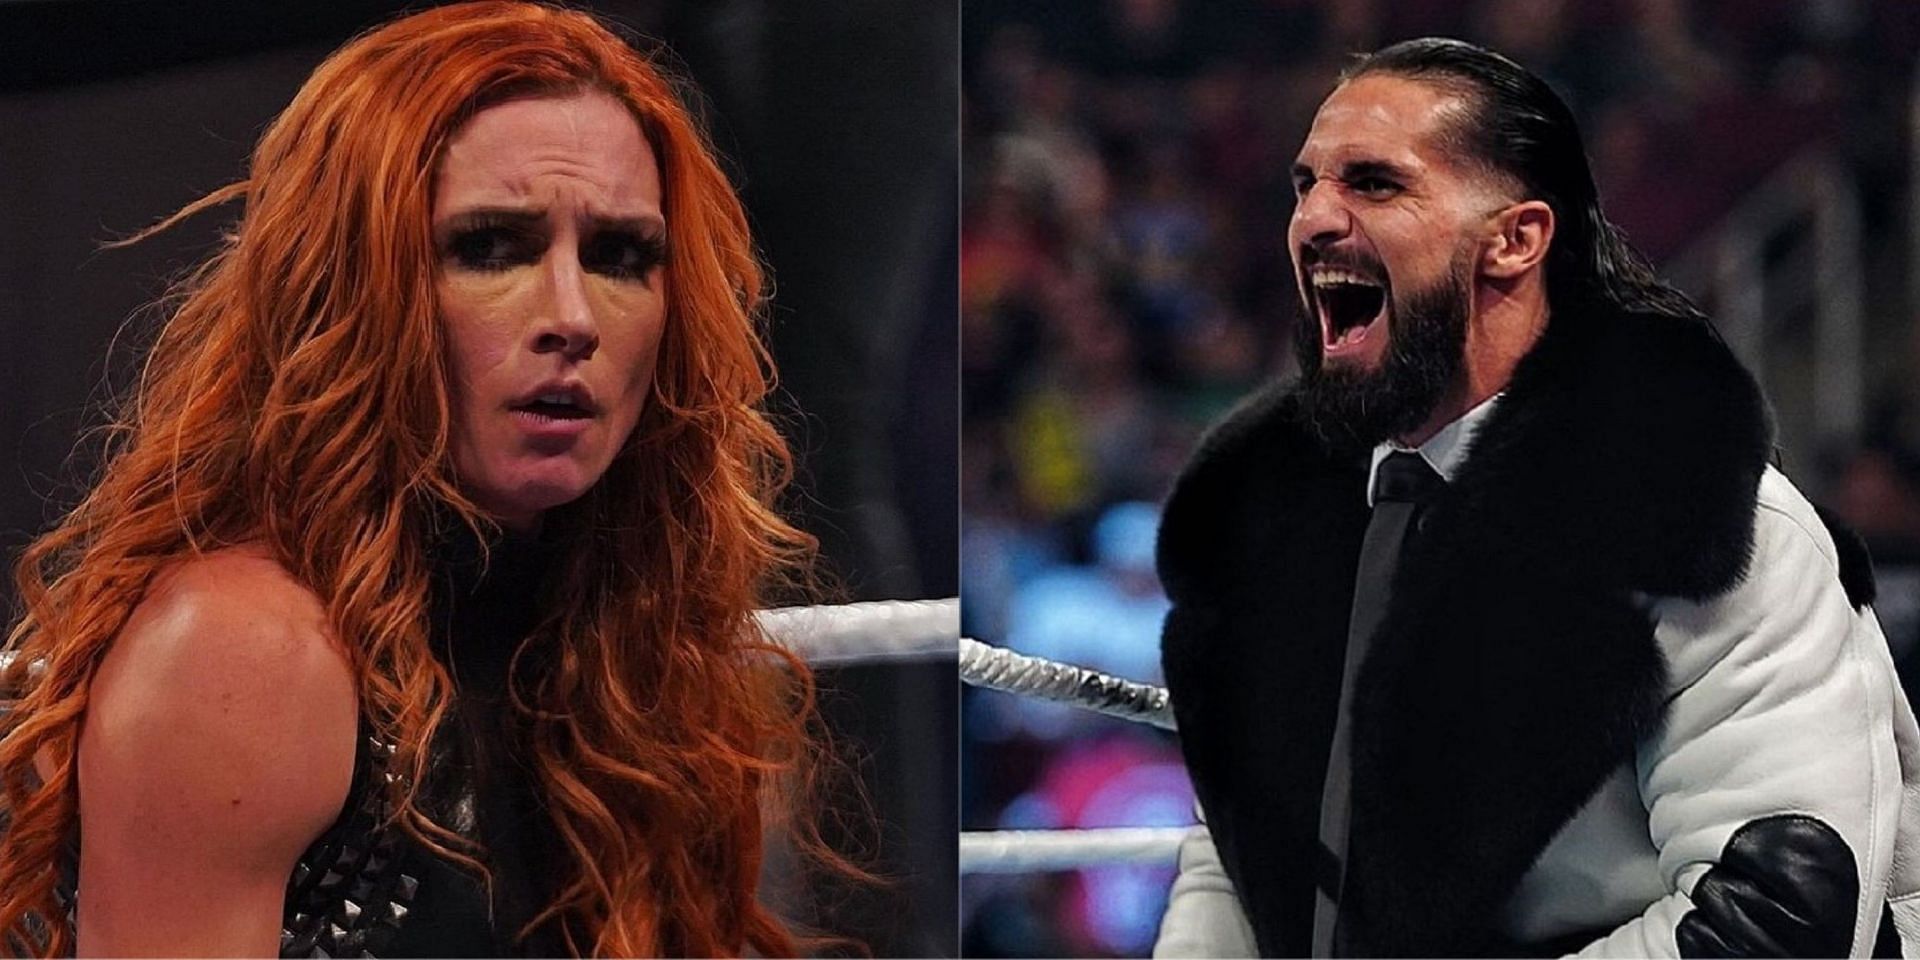 WWE Raw का अगला एपिसोड काफी ज्यादा बढ़िया साबित हो सकता है